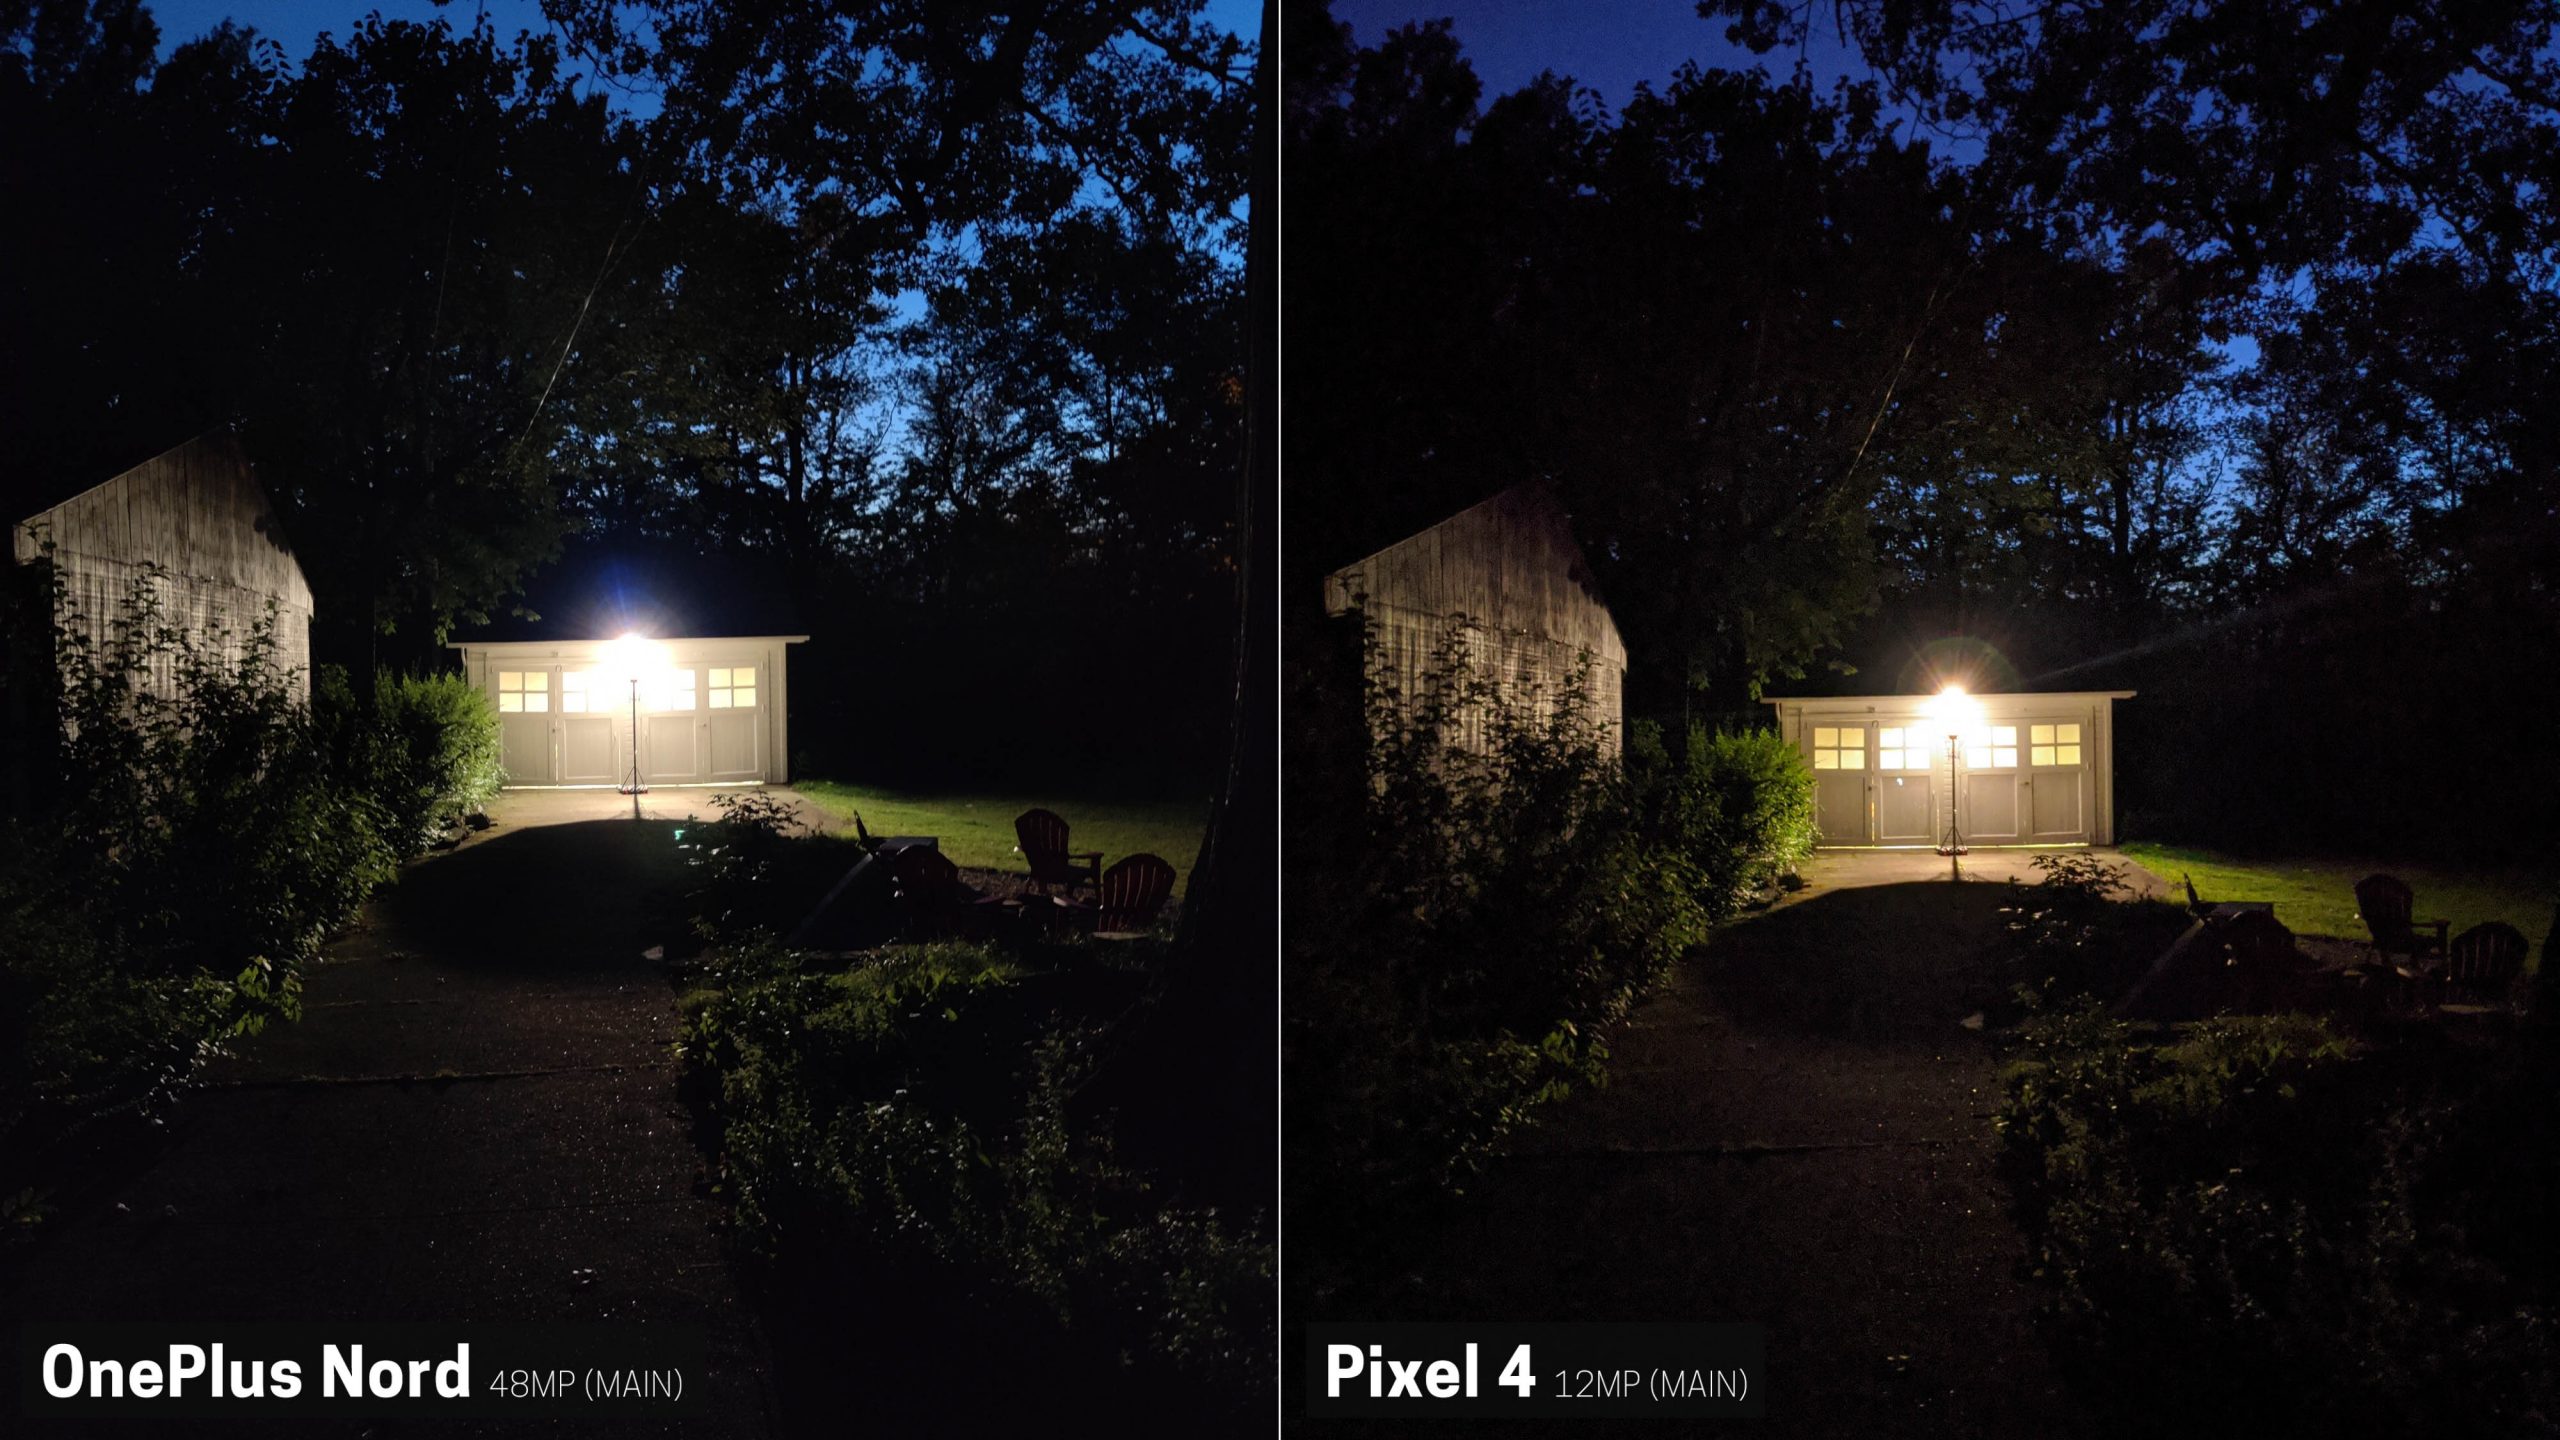 Pixel 4 melenyapkan OnePlus Nord dalam perbandingan kamera 44